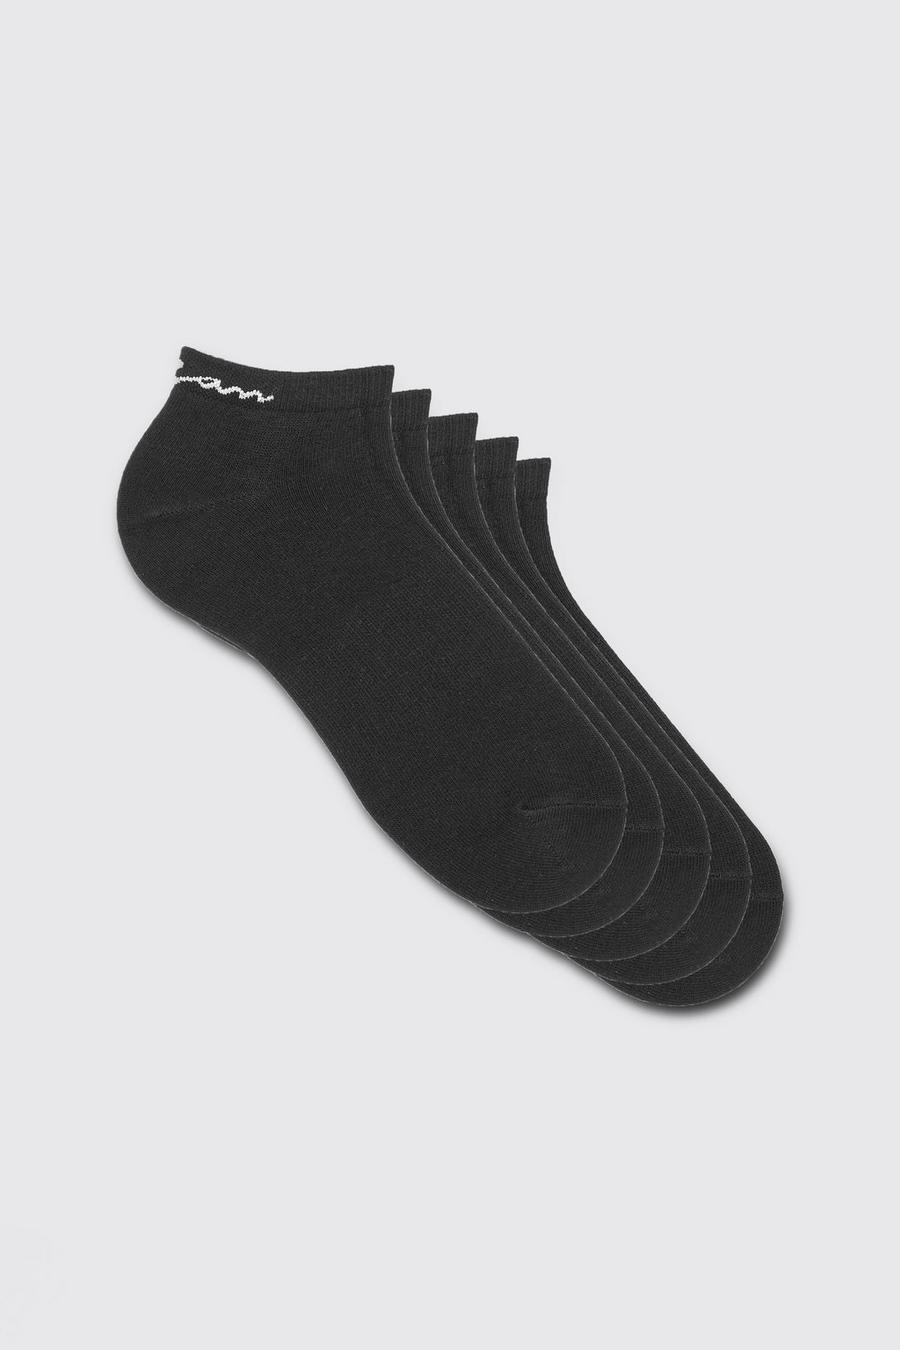 Pack de 5 pares de calcetines deportivos con firma MAN, Black